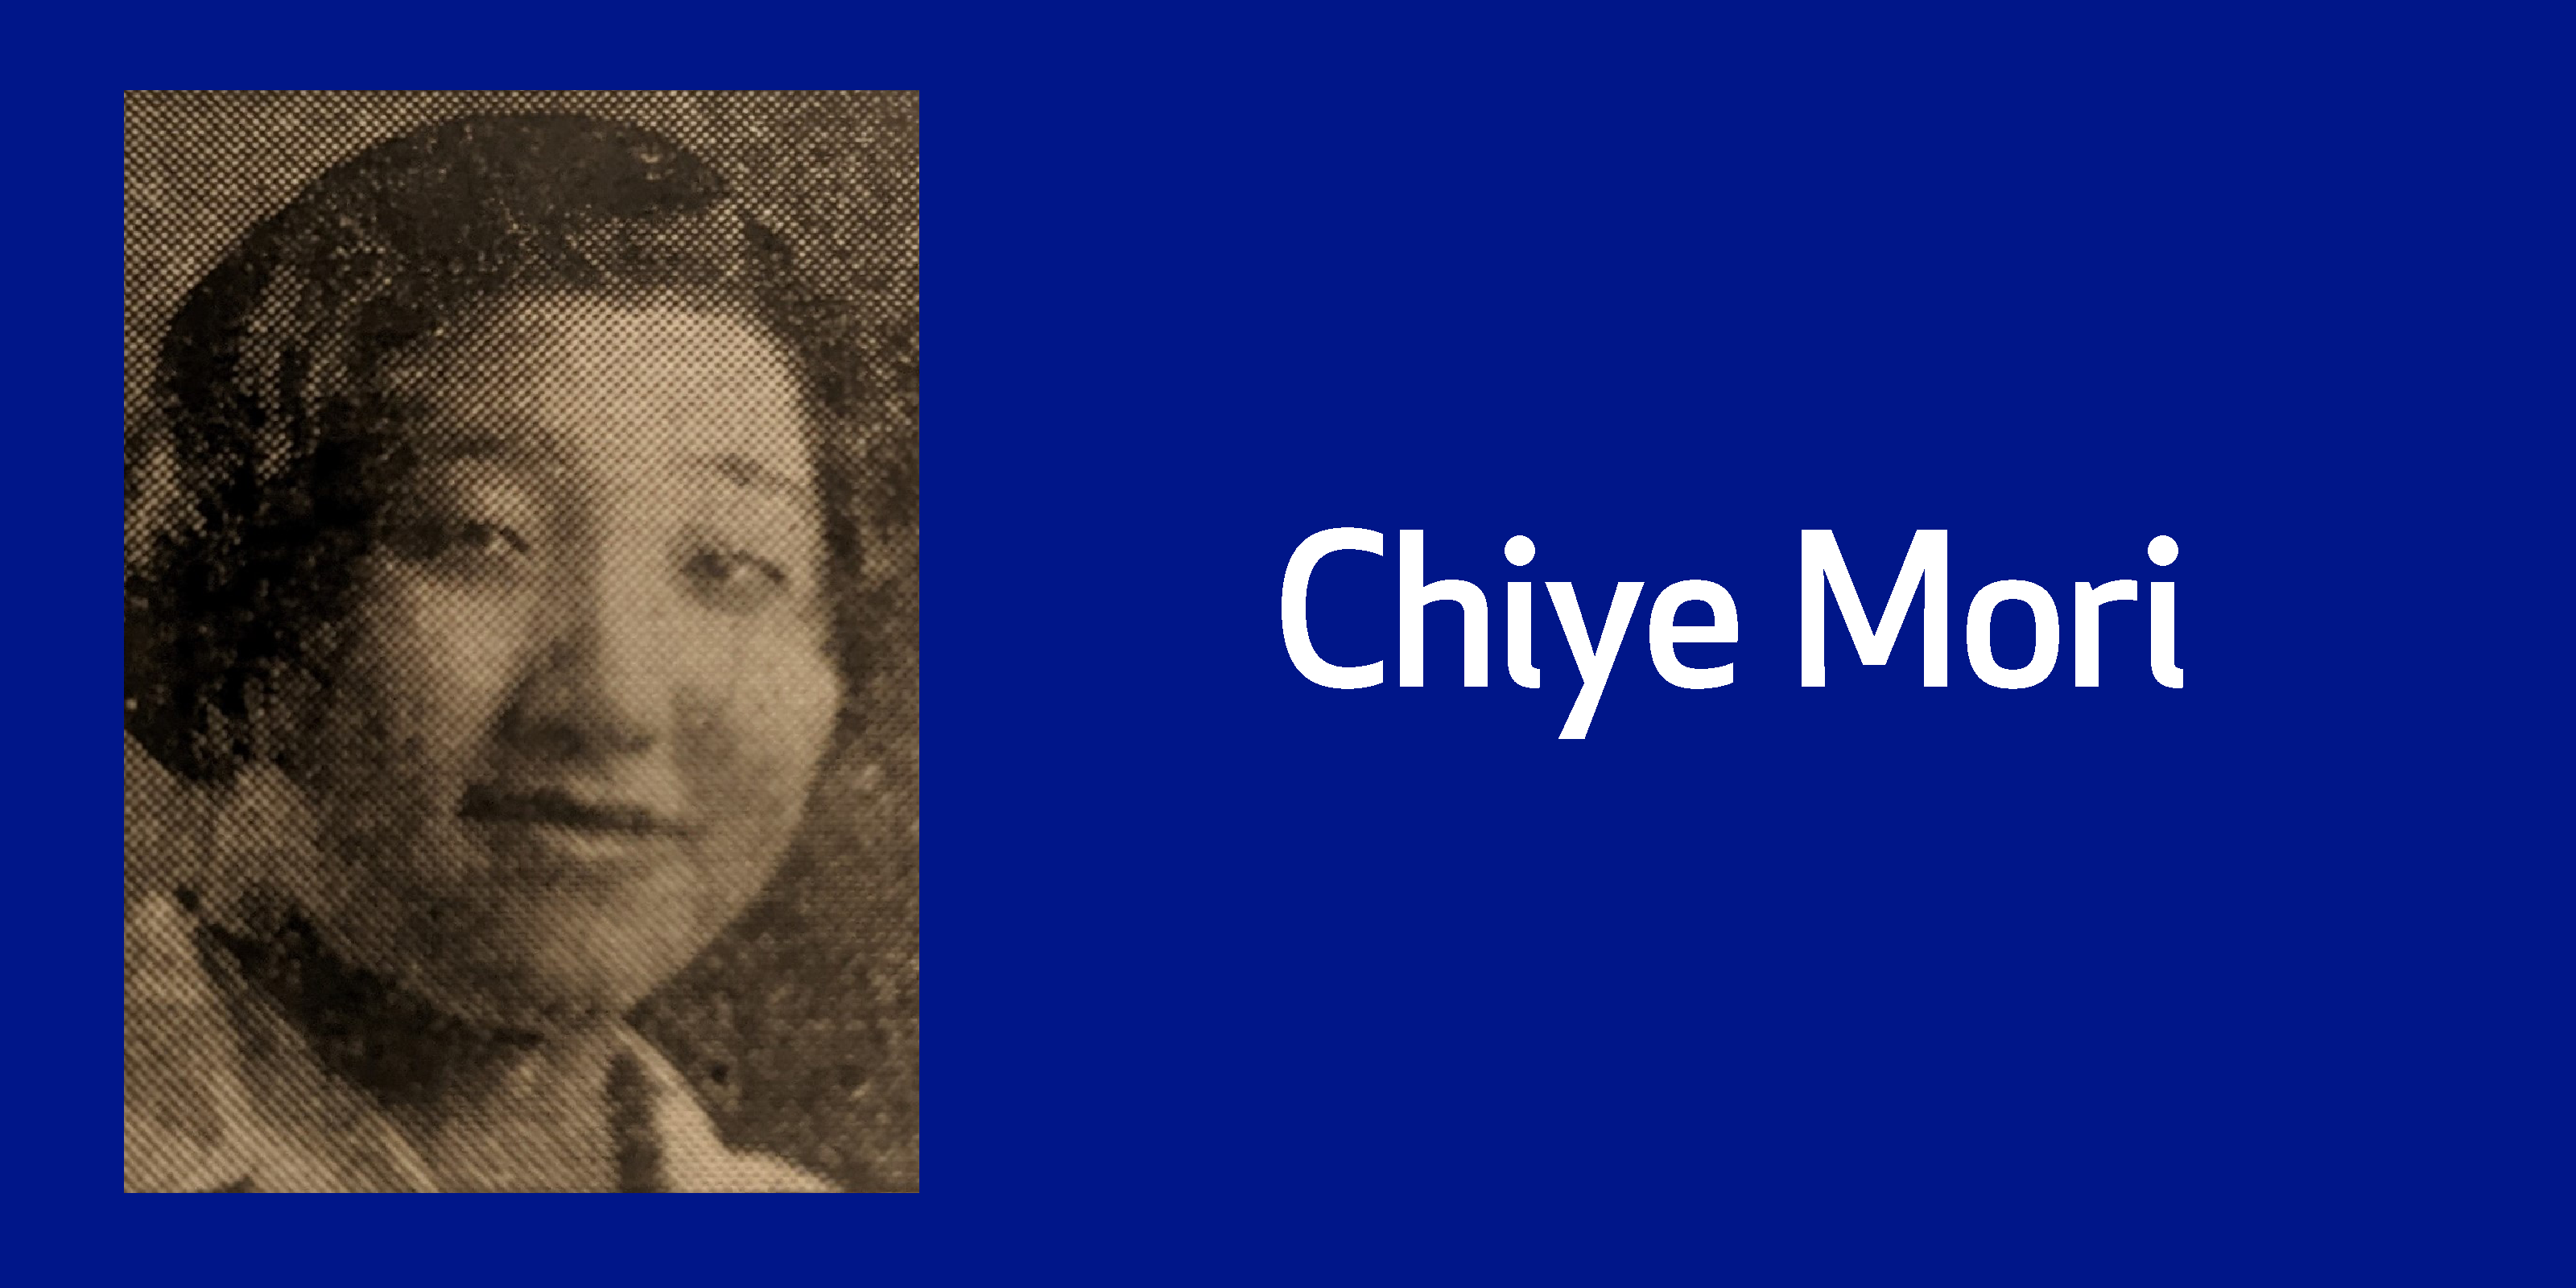 1930s photo of Chiye Mori